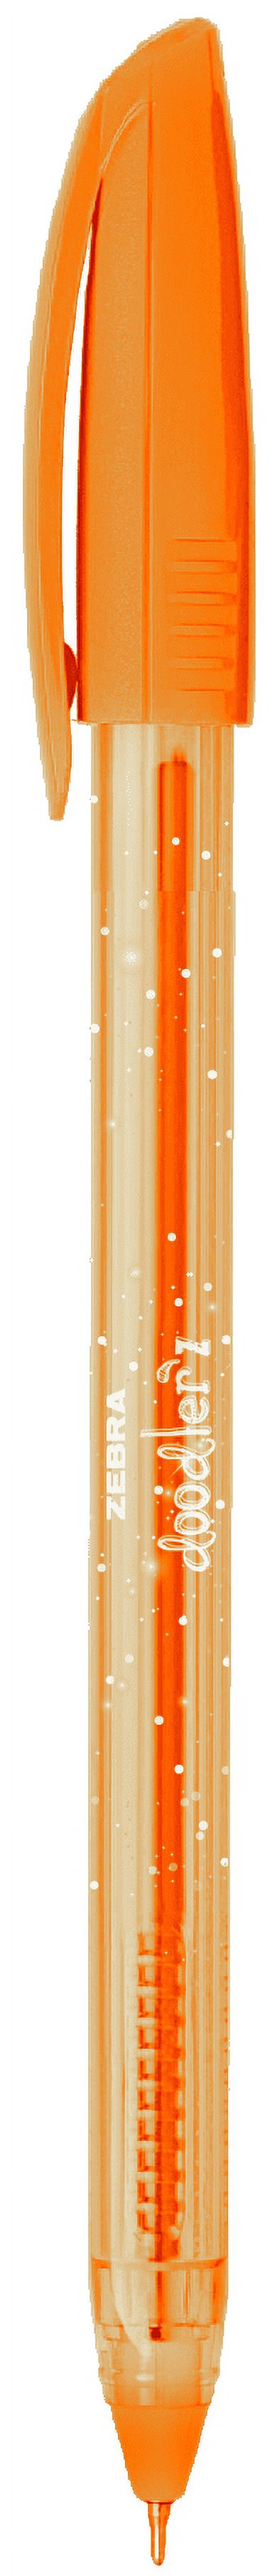 Zebra Pen Doodlerz Gel Stick Pens, Bold Point 1.0mm, Assorted Colors, 60-Count - image 5 of 8